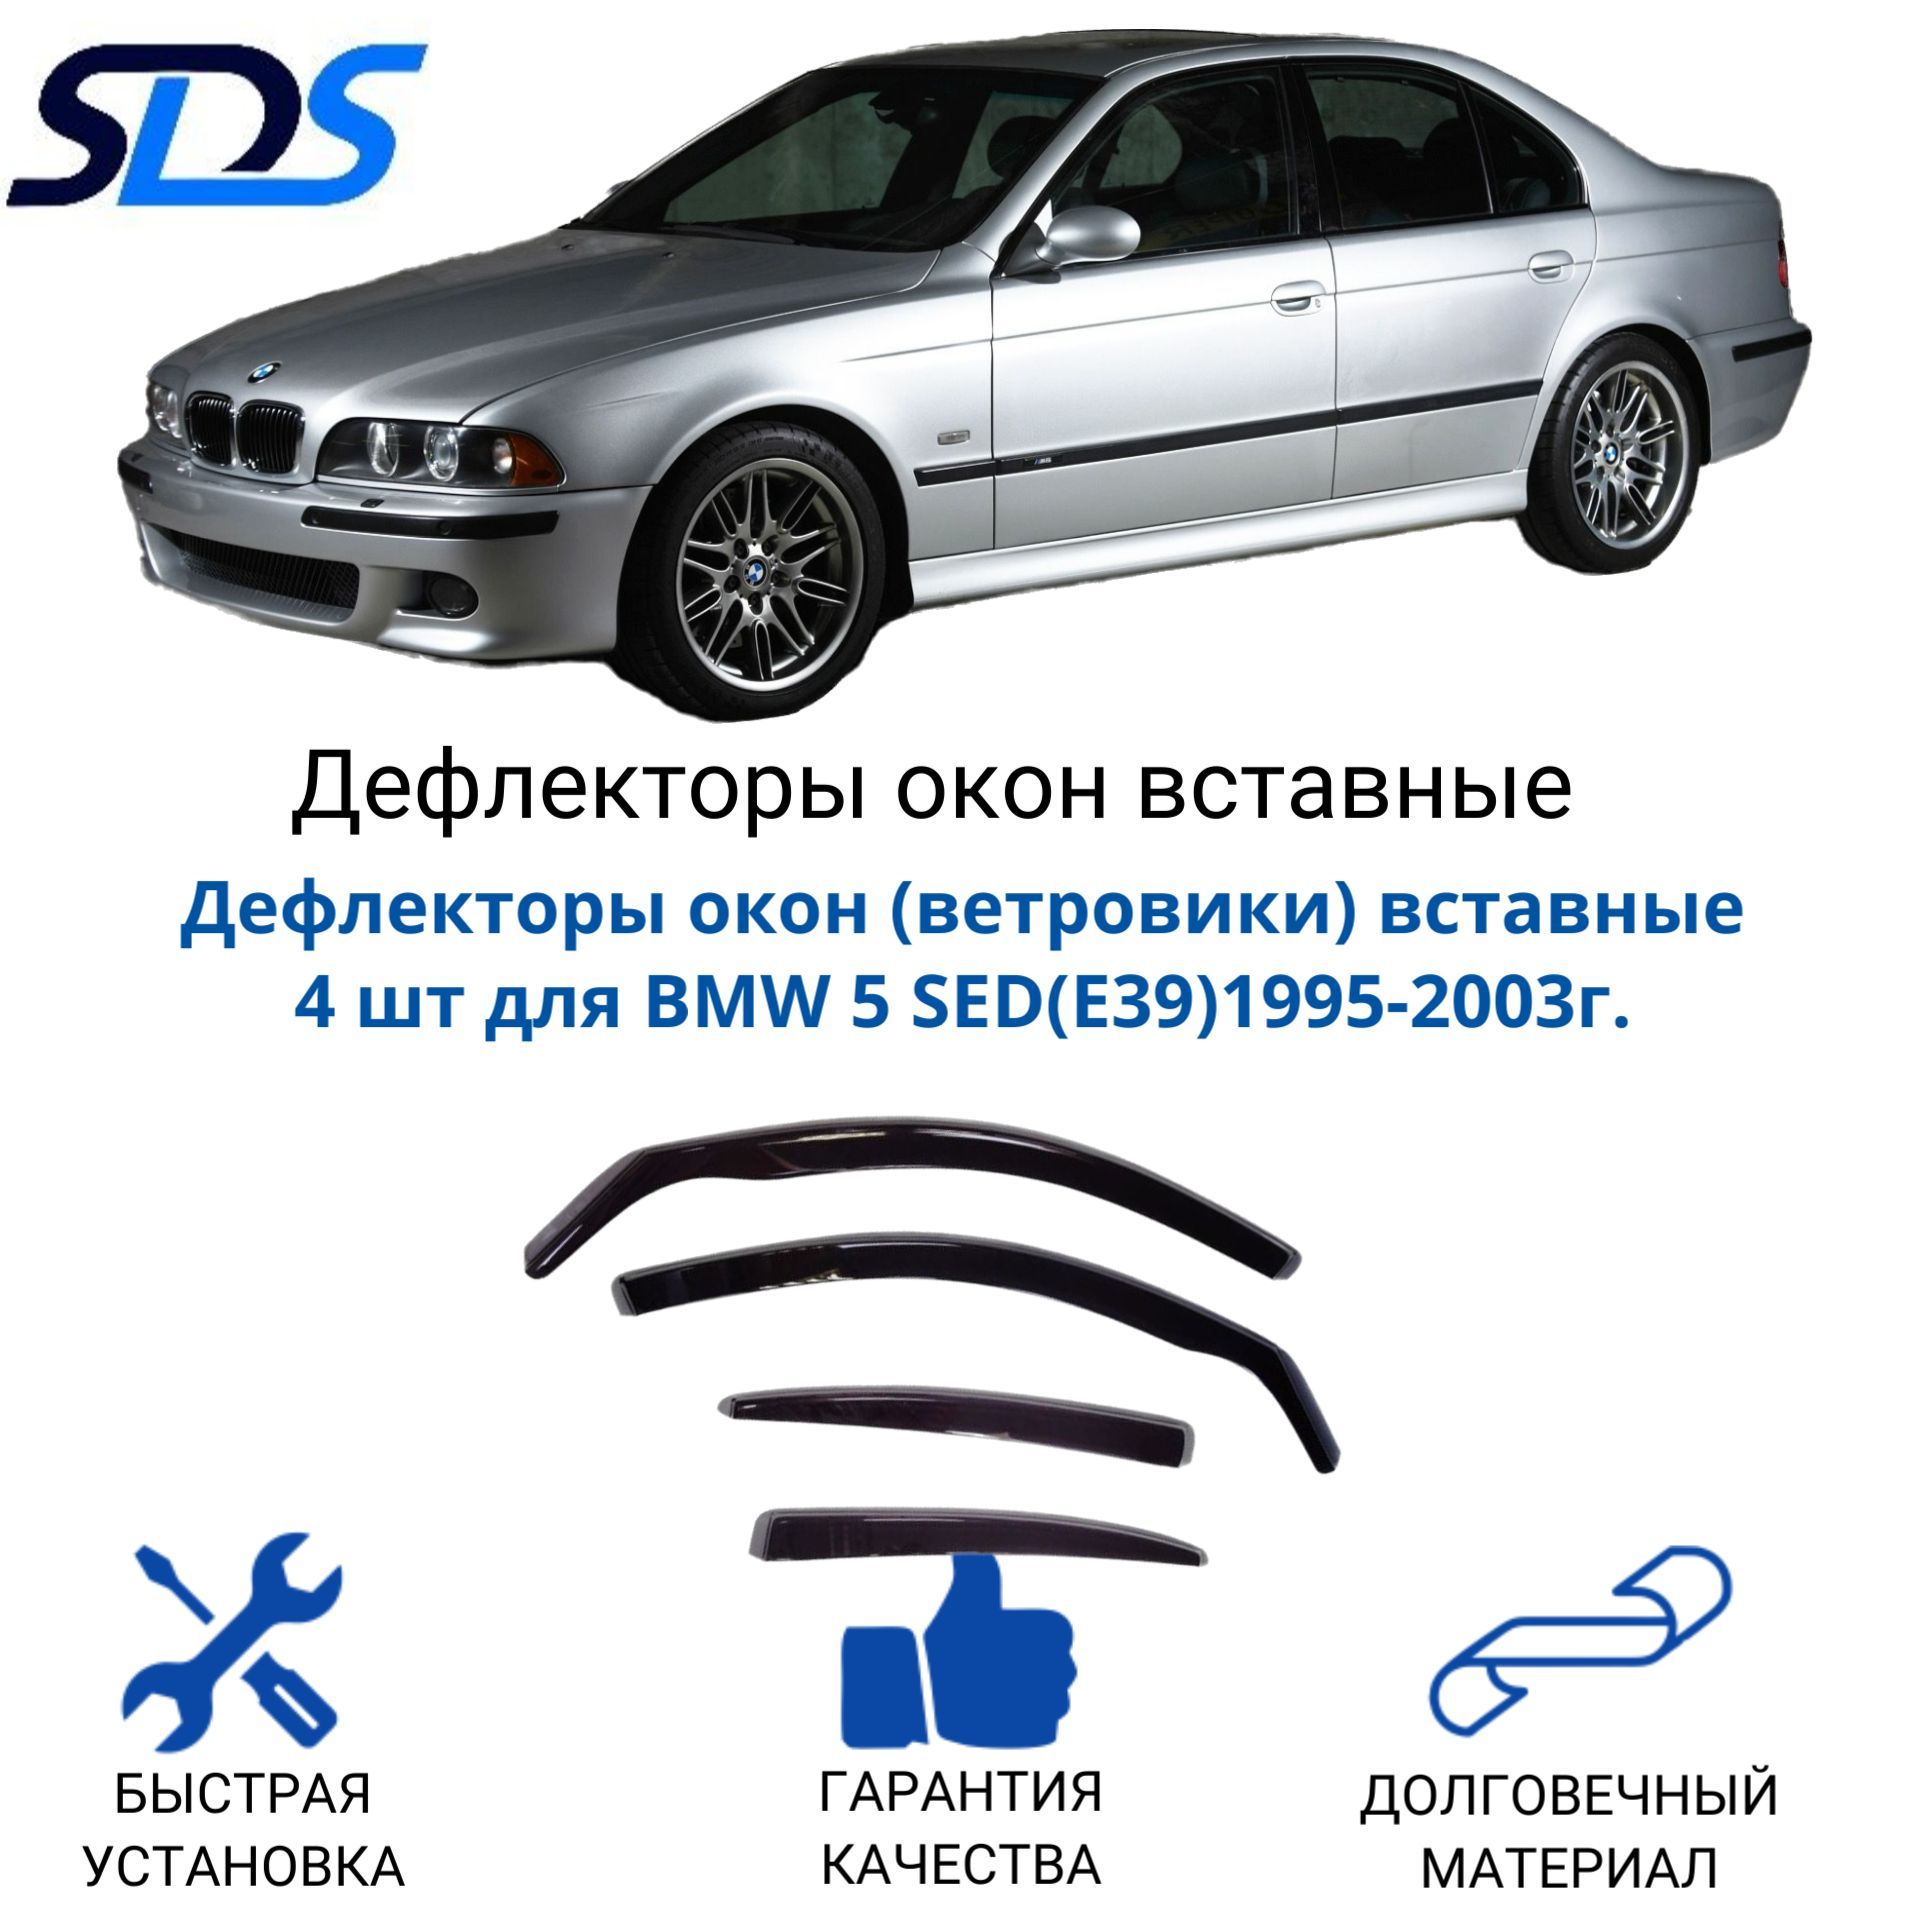 Дефлекторы окон, SDS, ветровики вставные для BMW 5 SED(E39)1995-2003, 4 шт